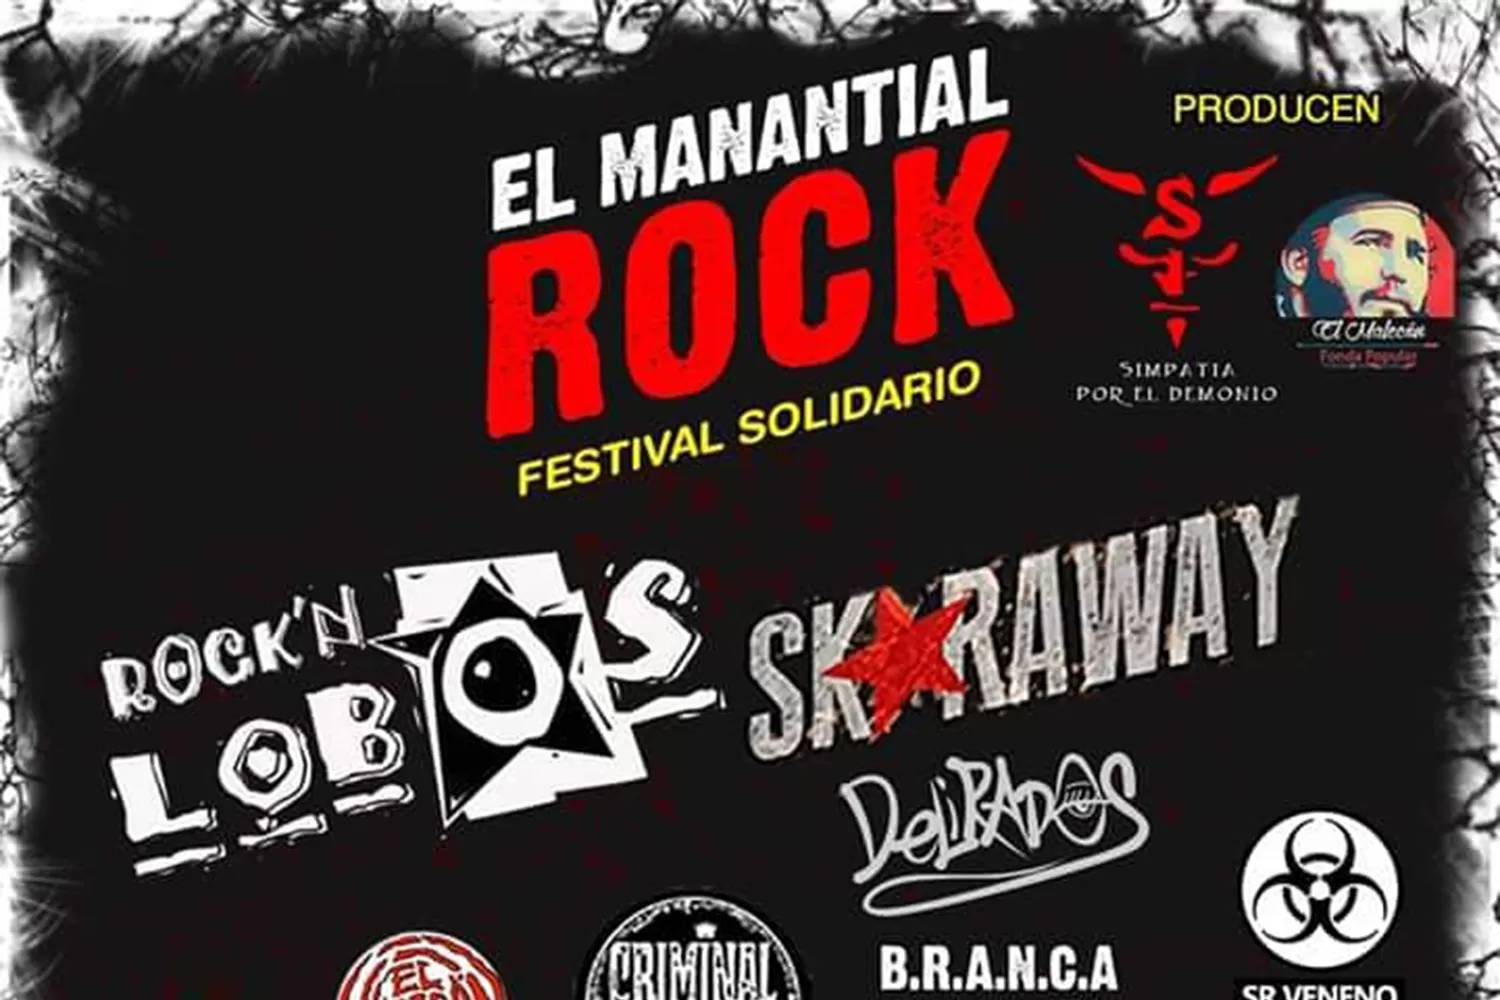 Entre el rock y el jazz: festival solidario en El Manantial